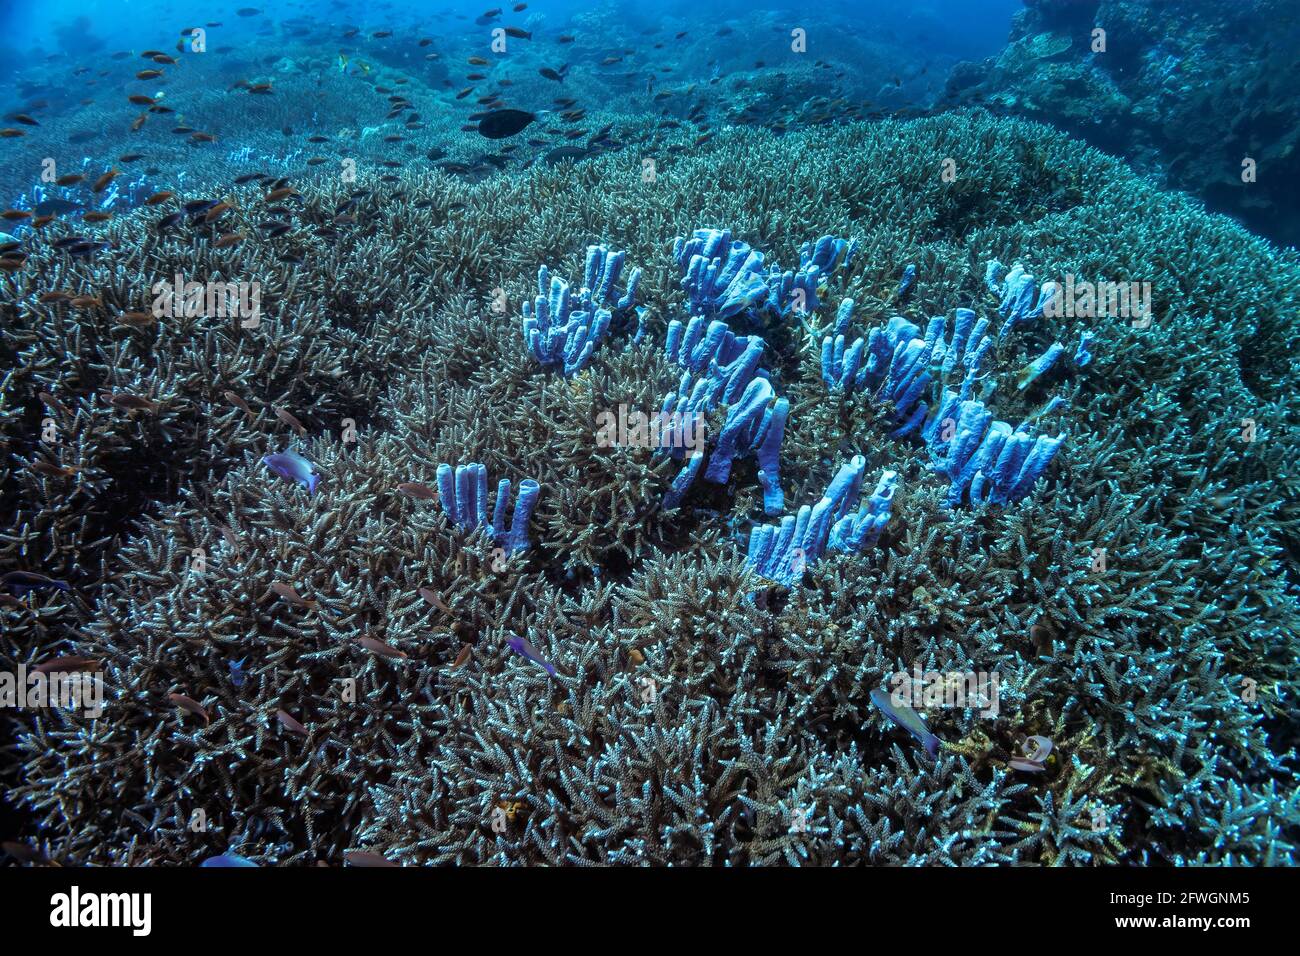 Die Kolonie der Blauröhrenschwämme wächst in der Mitte des dicht besiedelten Korallenriffs mit elkhorn. Bunte Riffkolonie, viele kleine Fische. Aufnahme in Durin Stockfoto